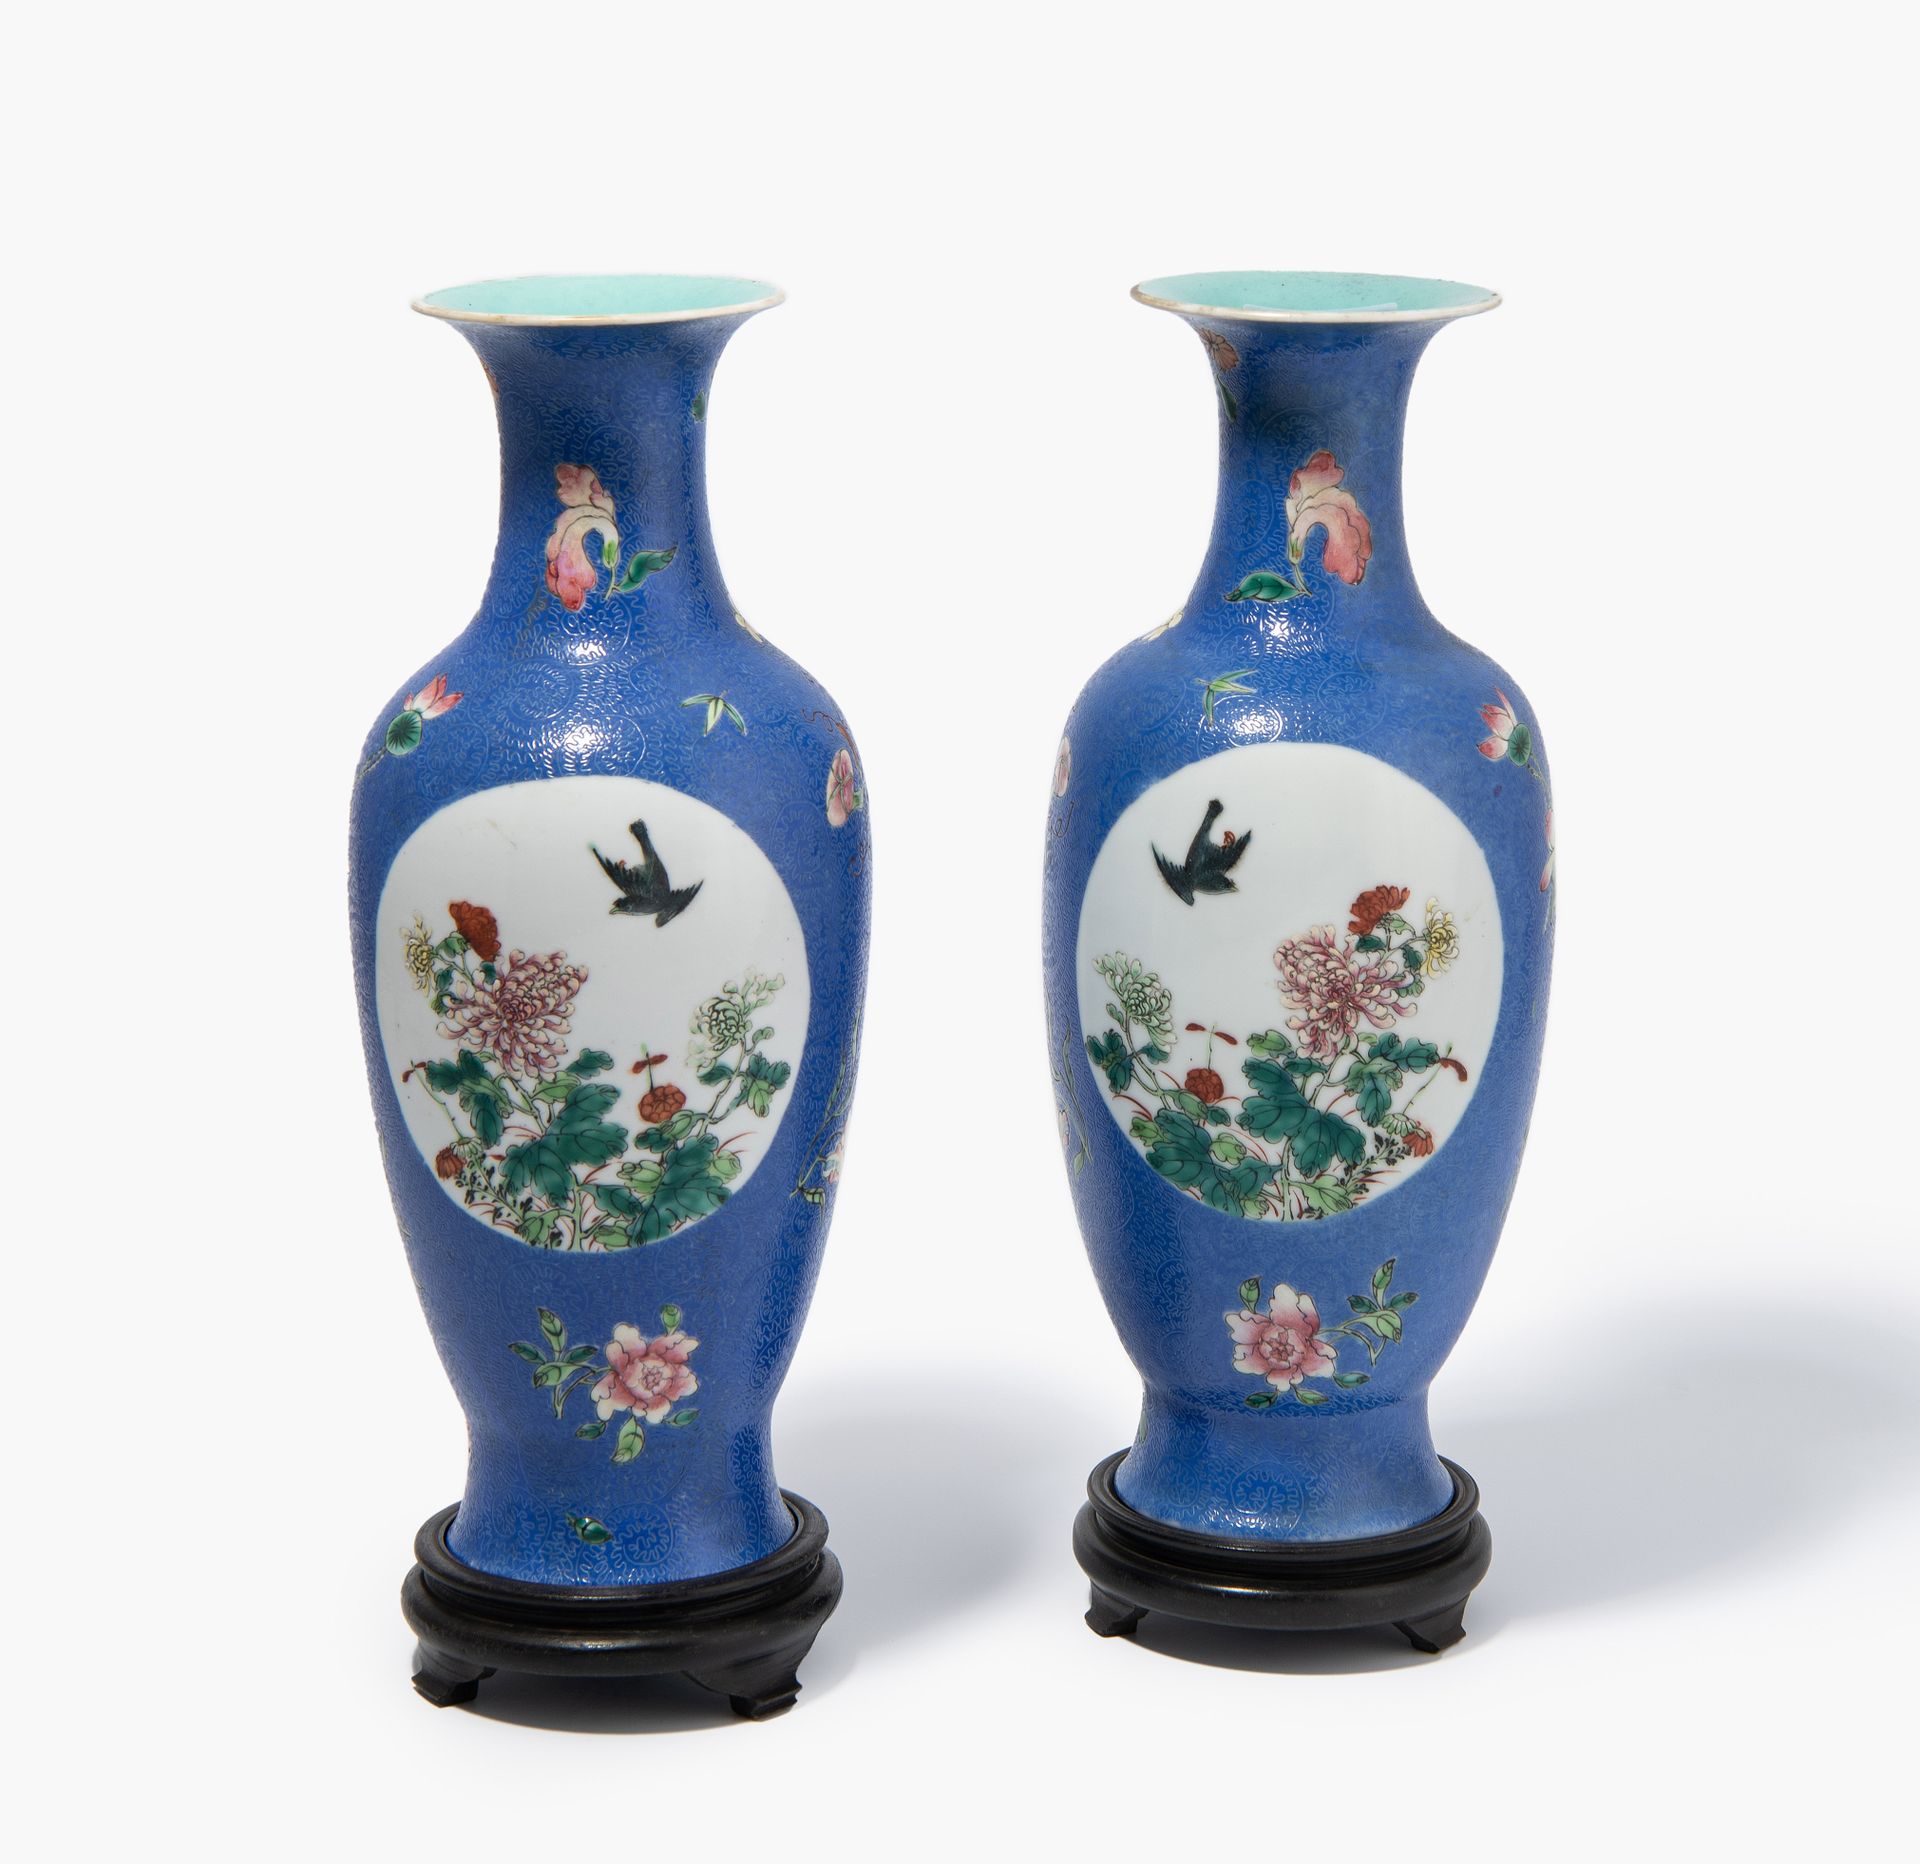 1 Paar Vasen 1对花瓶
中国，19/20世纪，瓷器。铁红色的六字乾隆印记。钴蓝釉，在卷草纹之间有多色花纹的涂抹。阳台形花瓶，略微突出的嘴唇。两个椭圆&hellip;